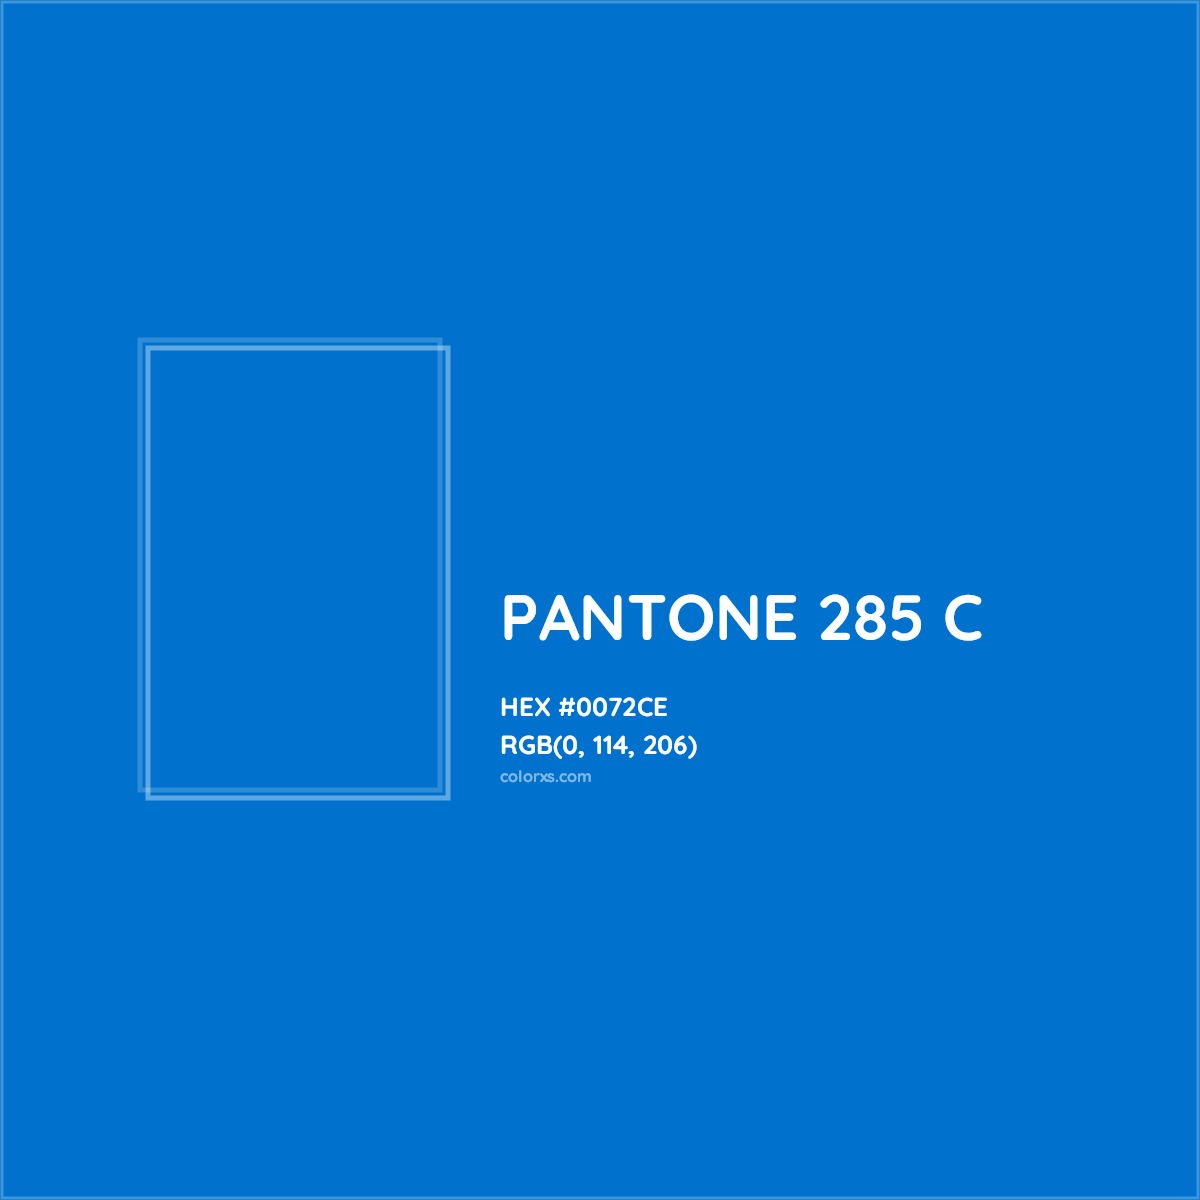 HEX #0072CE PANTONE 285 C CMS Pantone PMS - Color Code